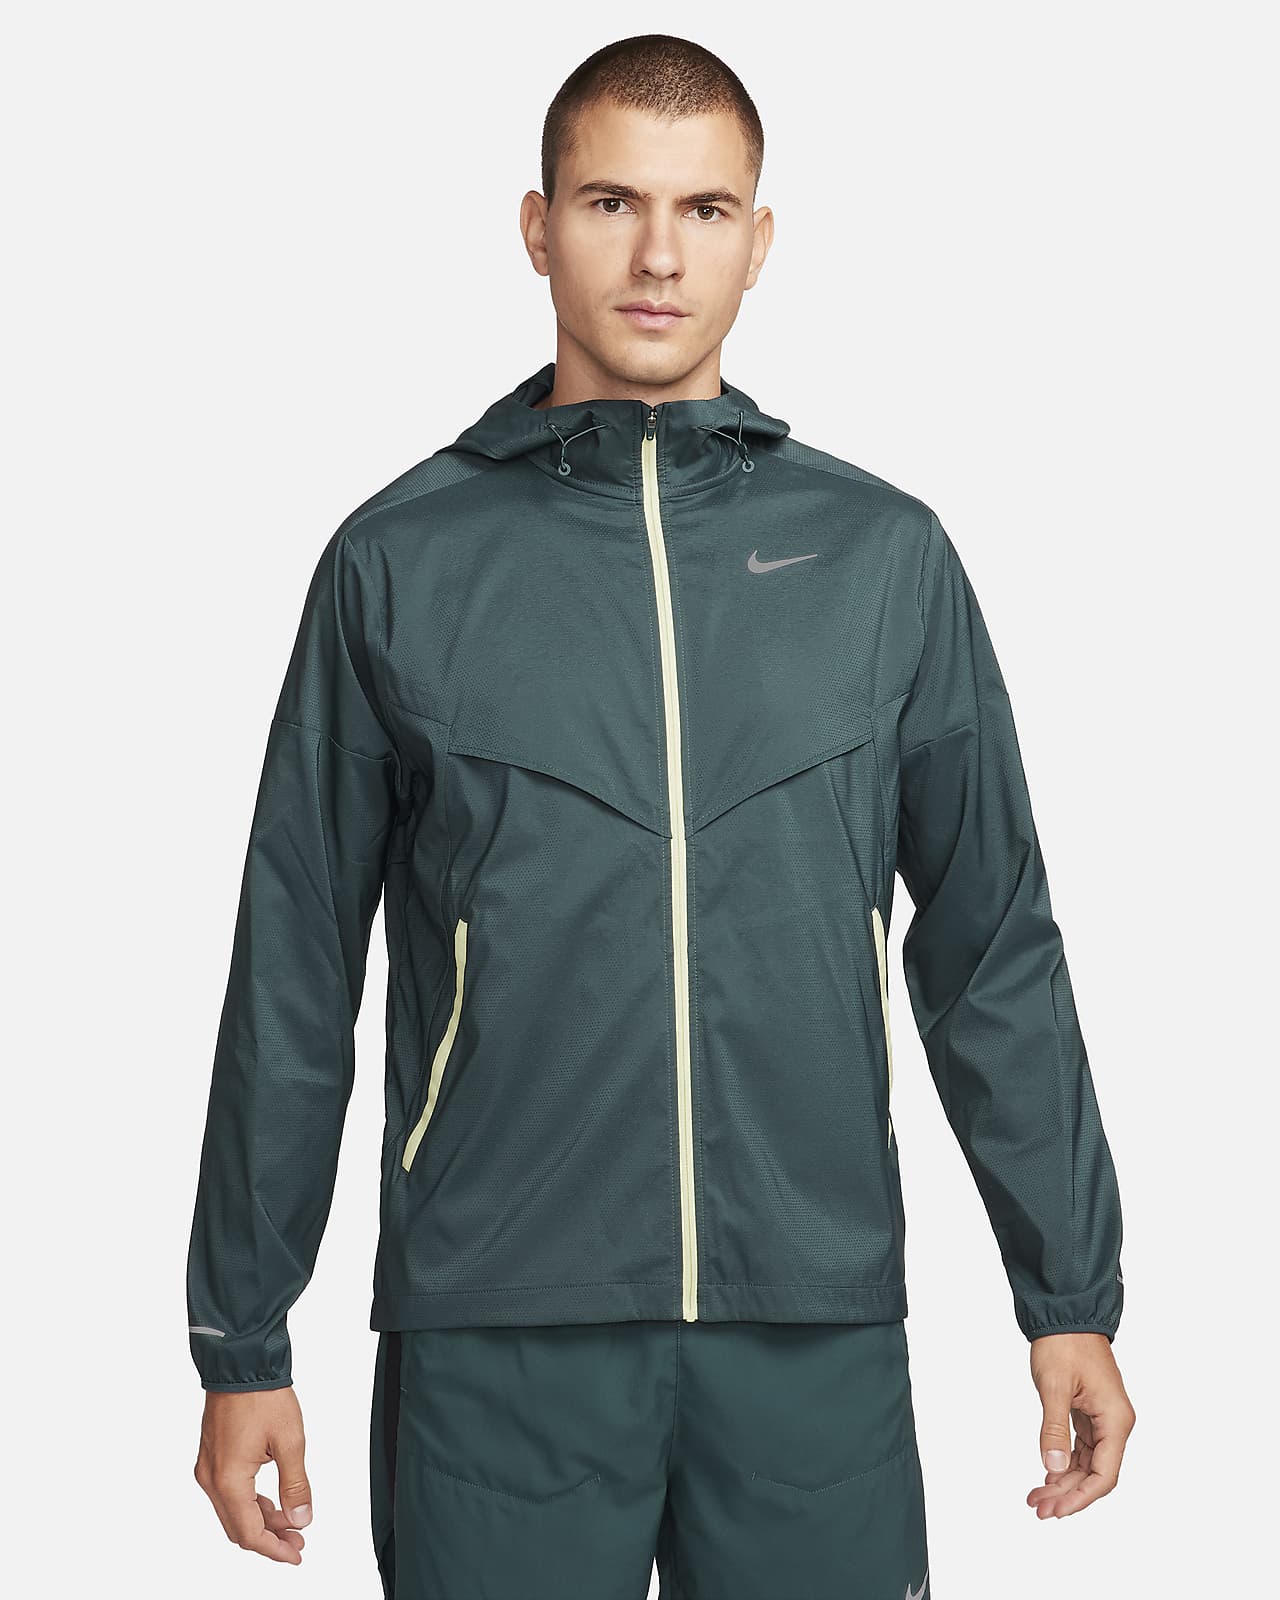 Afskedige gentagelse fabrik Nike Windrunner Men's Repel Running Jacket. Nike.com